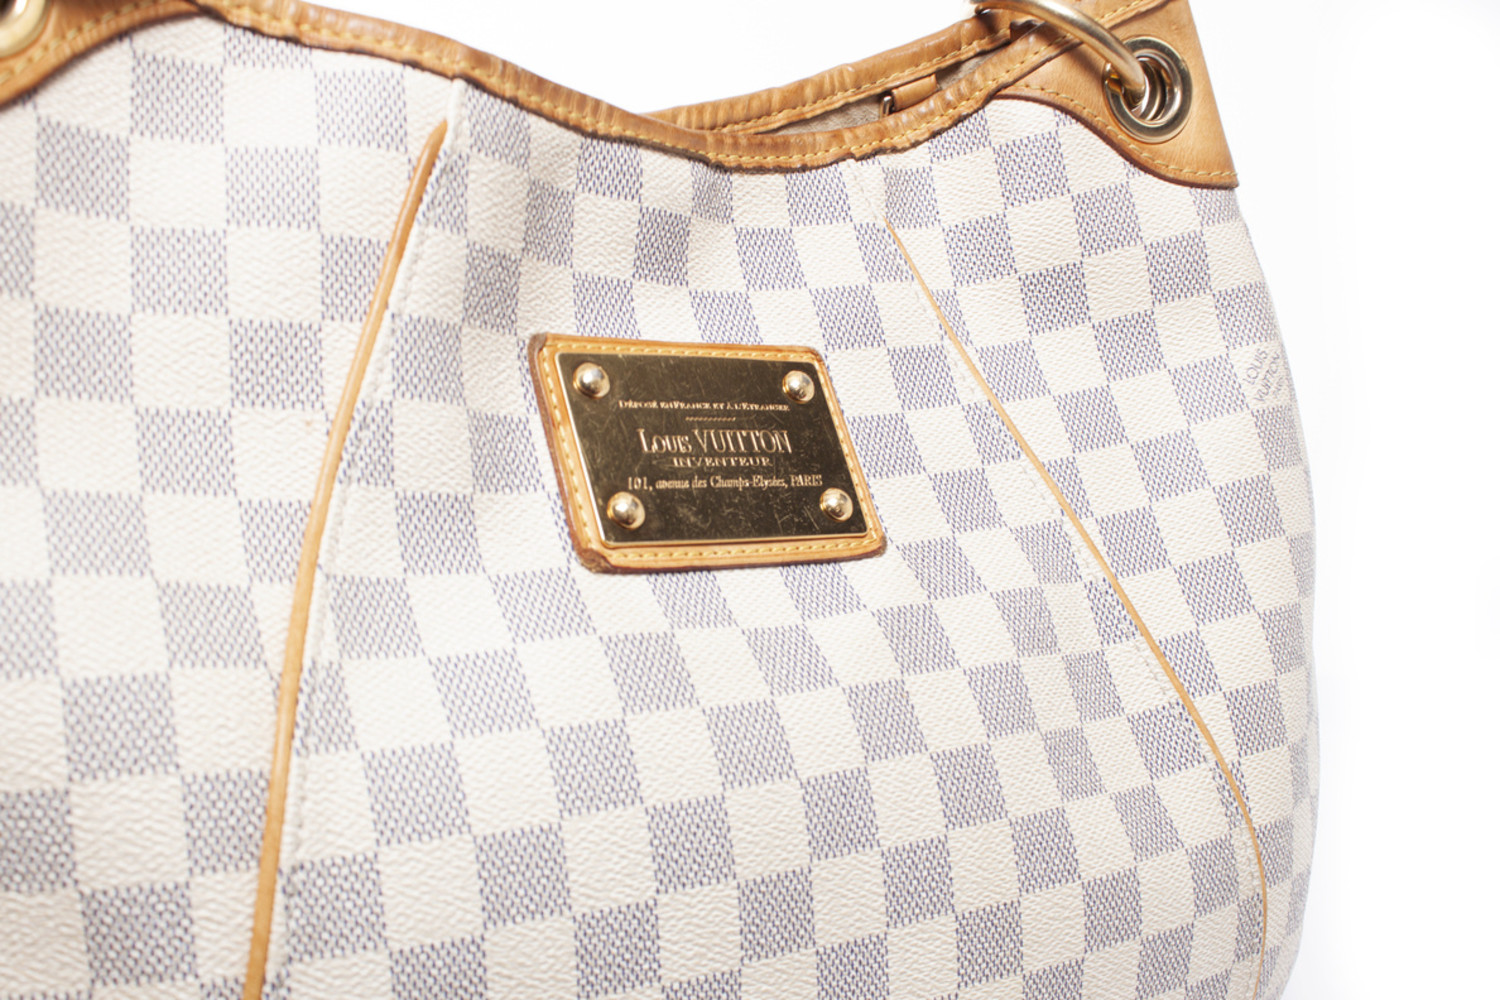 Louis Vuitton Galliera groot model handtas in azur damier canvas